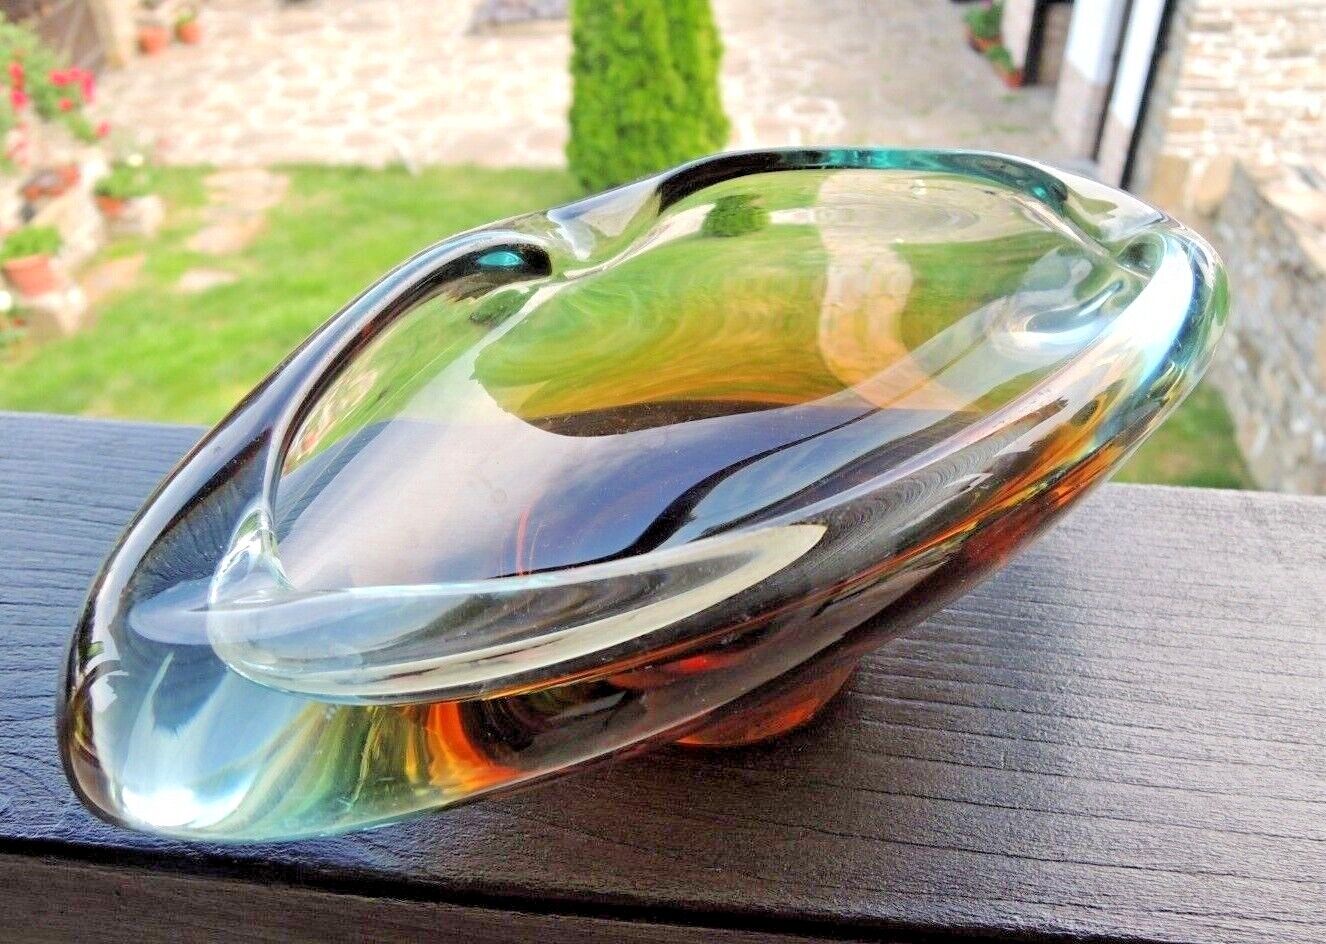 VTG.CZECH ART GLASS ASHTRAY, BOWL DESIGNED BY FRANTISEK ZEMEK FOR MSTISOV